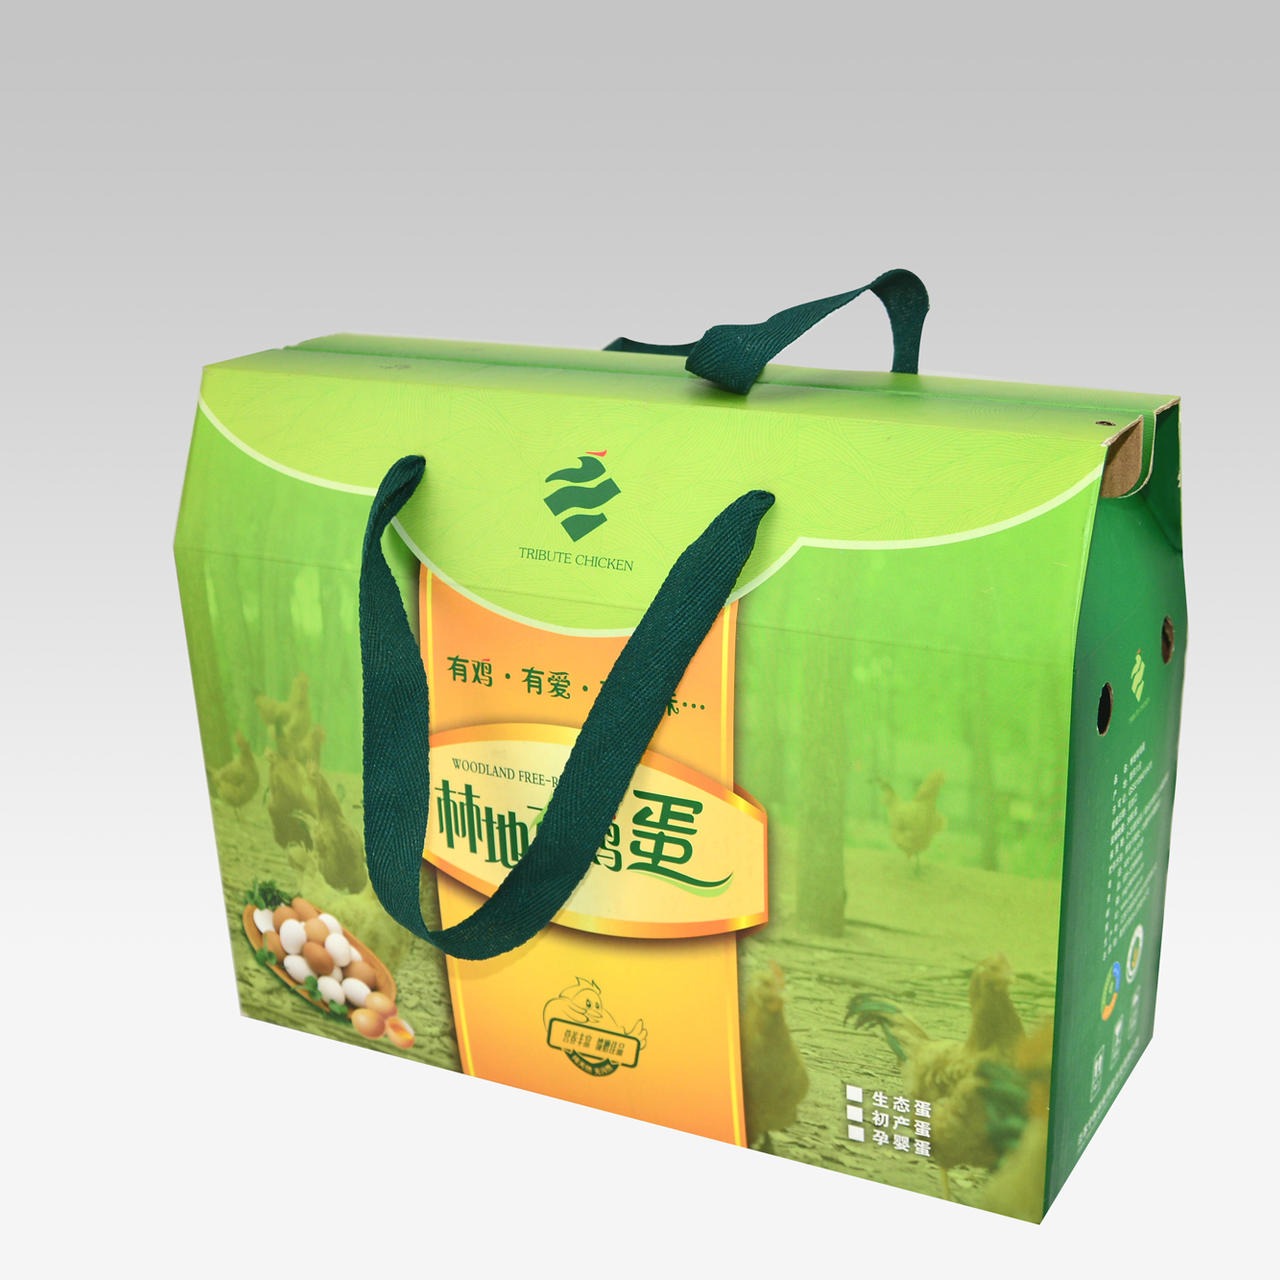 南京包装厂家 定制生产包装礼品盒 各类包装盒设计生产定制 质量保证 源创包装图片